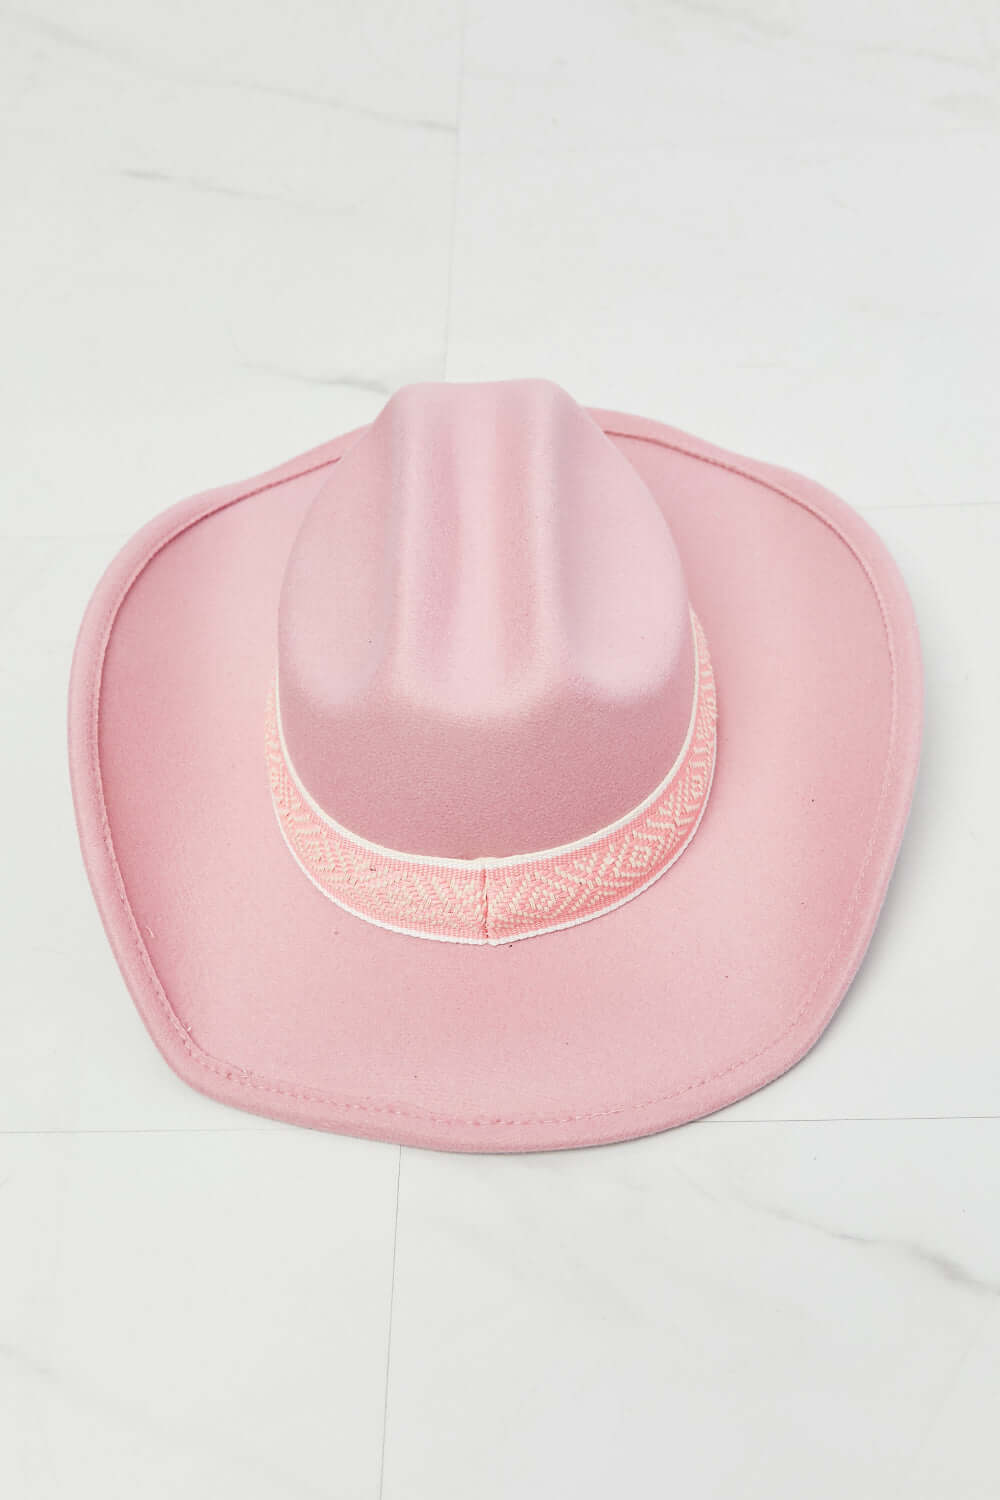 Fame Western Cutie Cowboy Hat in Pink - Zara-Craft